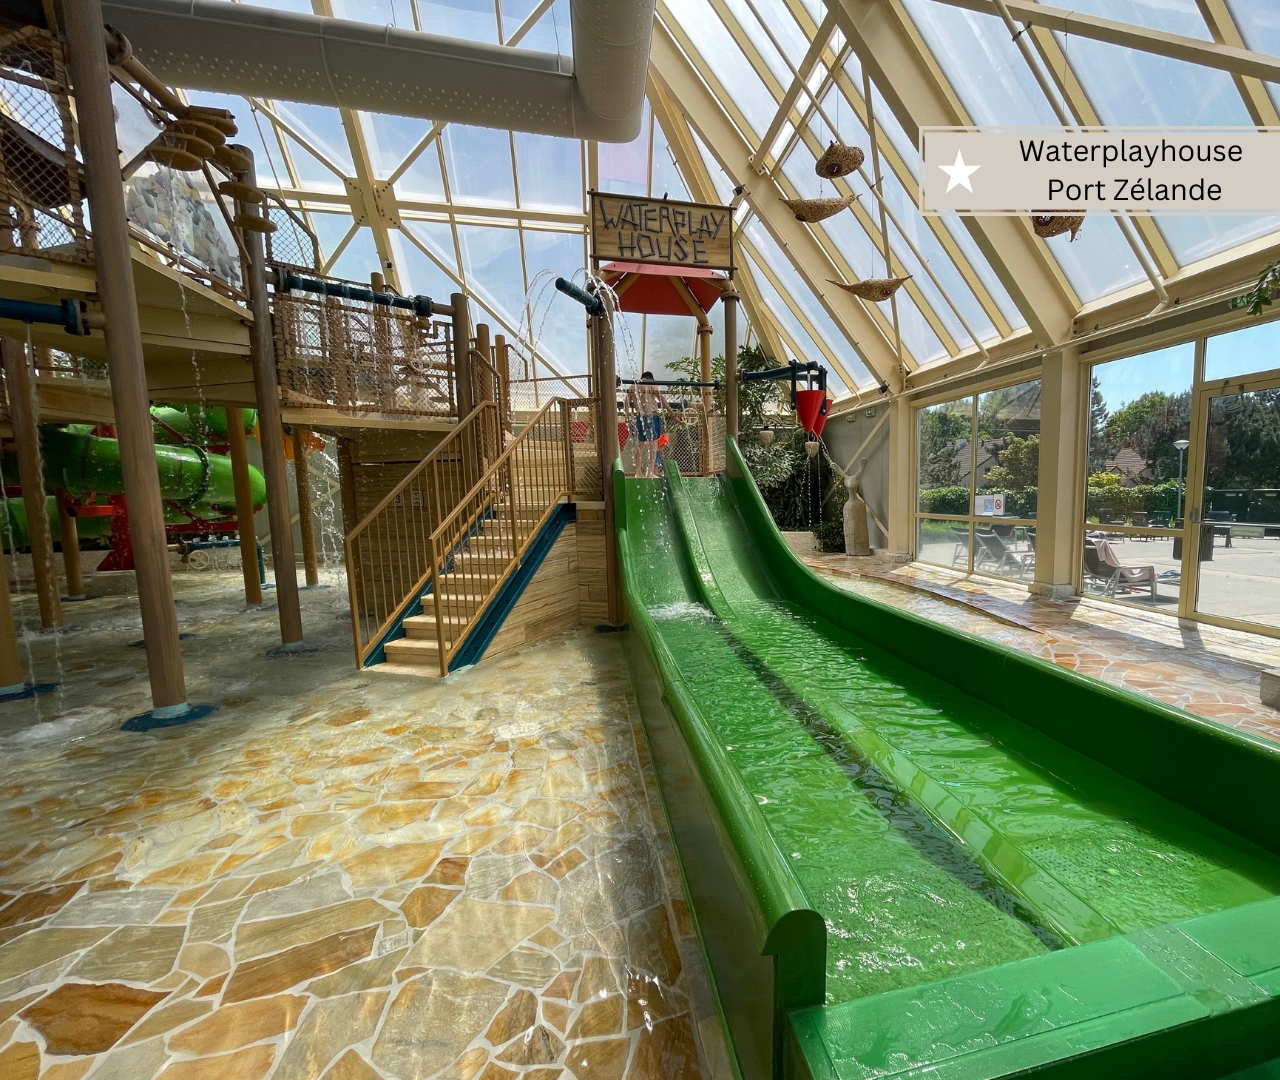 Center Parcs Port Zelande - Waterplayhouse mit Rutschen für Kleinkinder